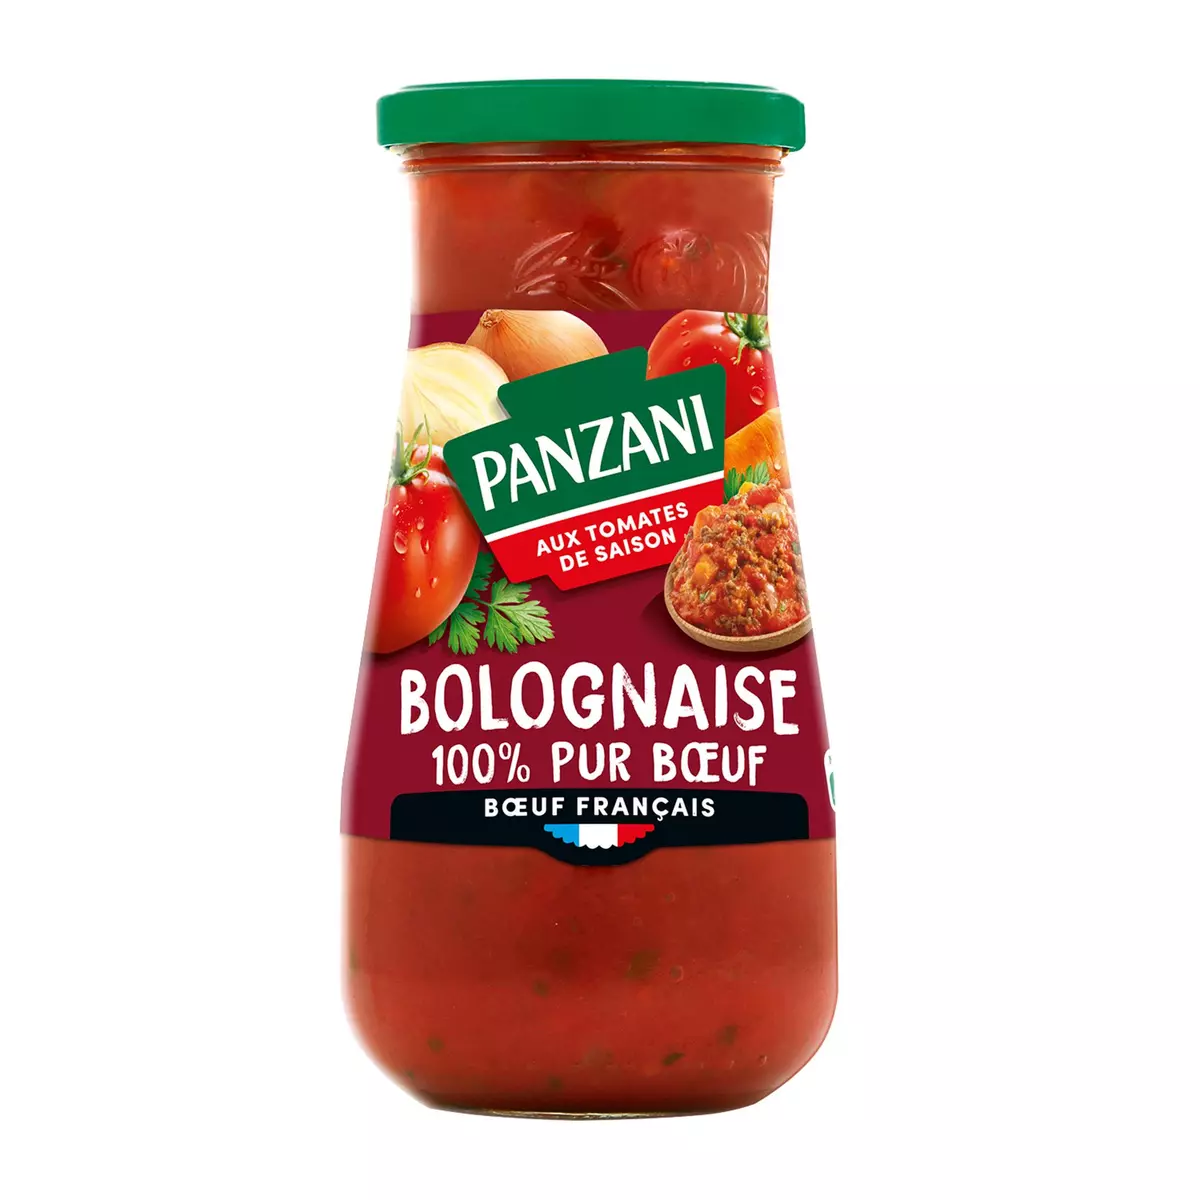 PANZANI Sauce bolognaise 100% pur bœuf français en bocal 400g